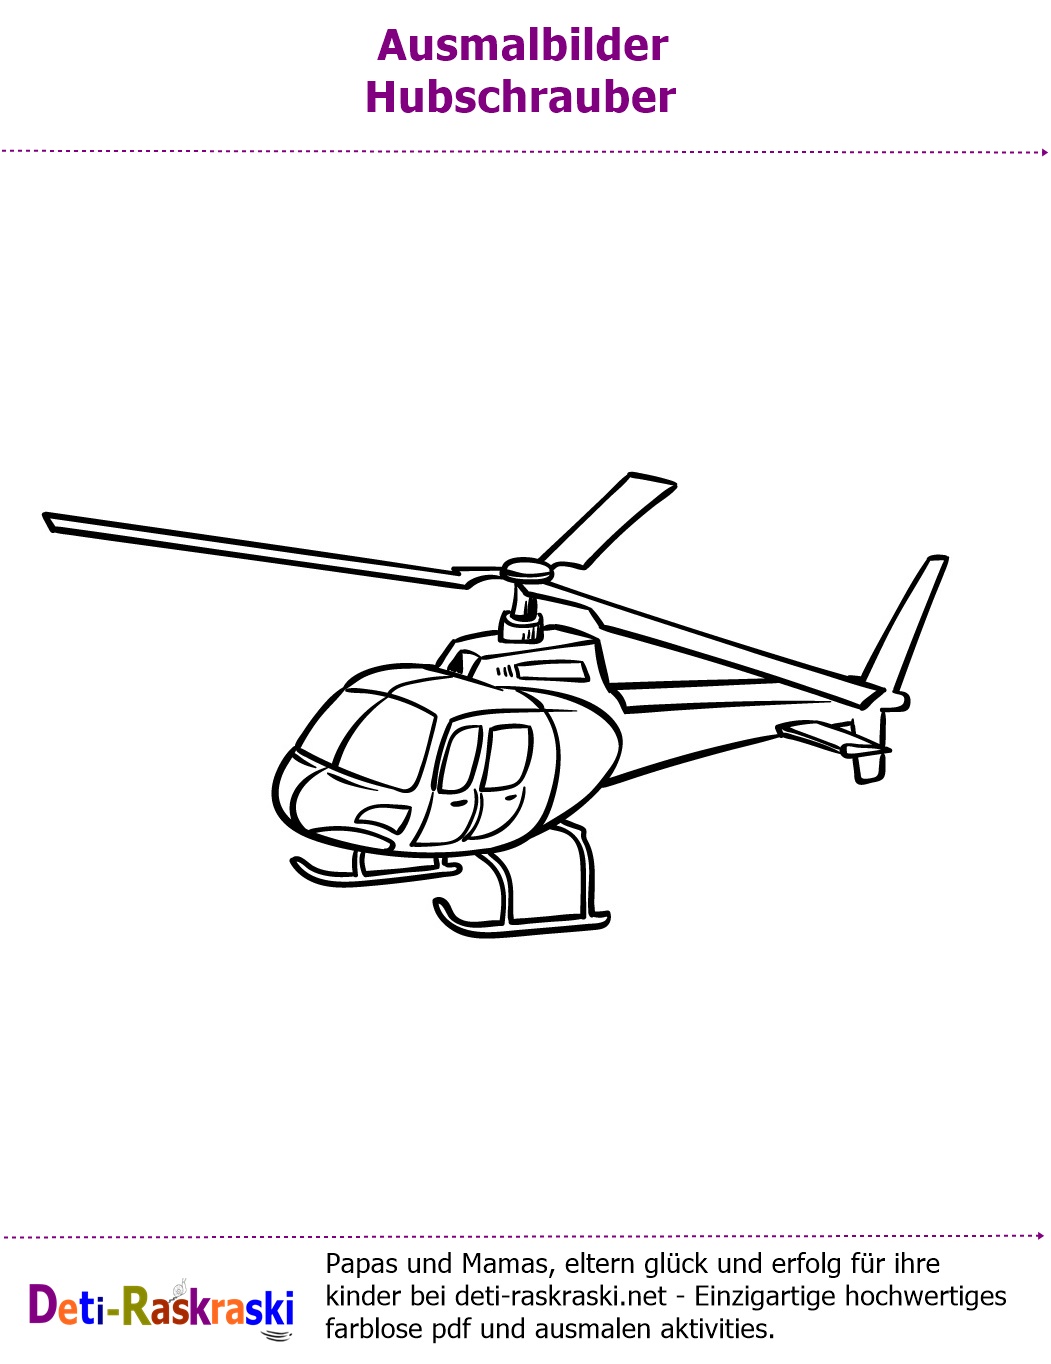 Hubschrauber Ausmalbilder Kostenlos im Pdf